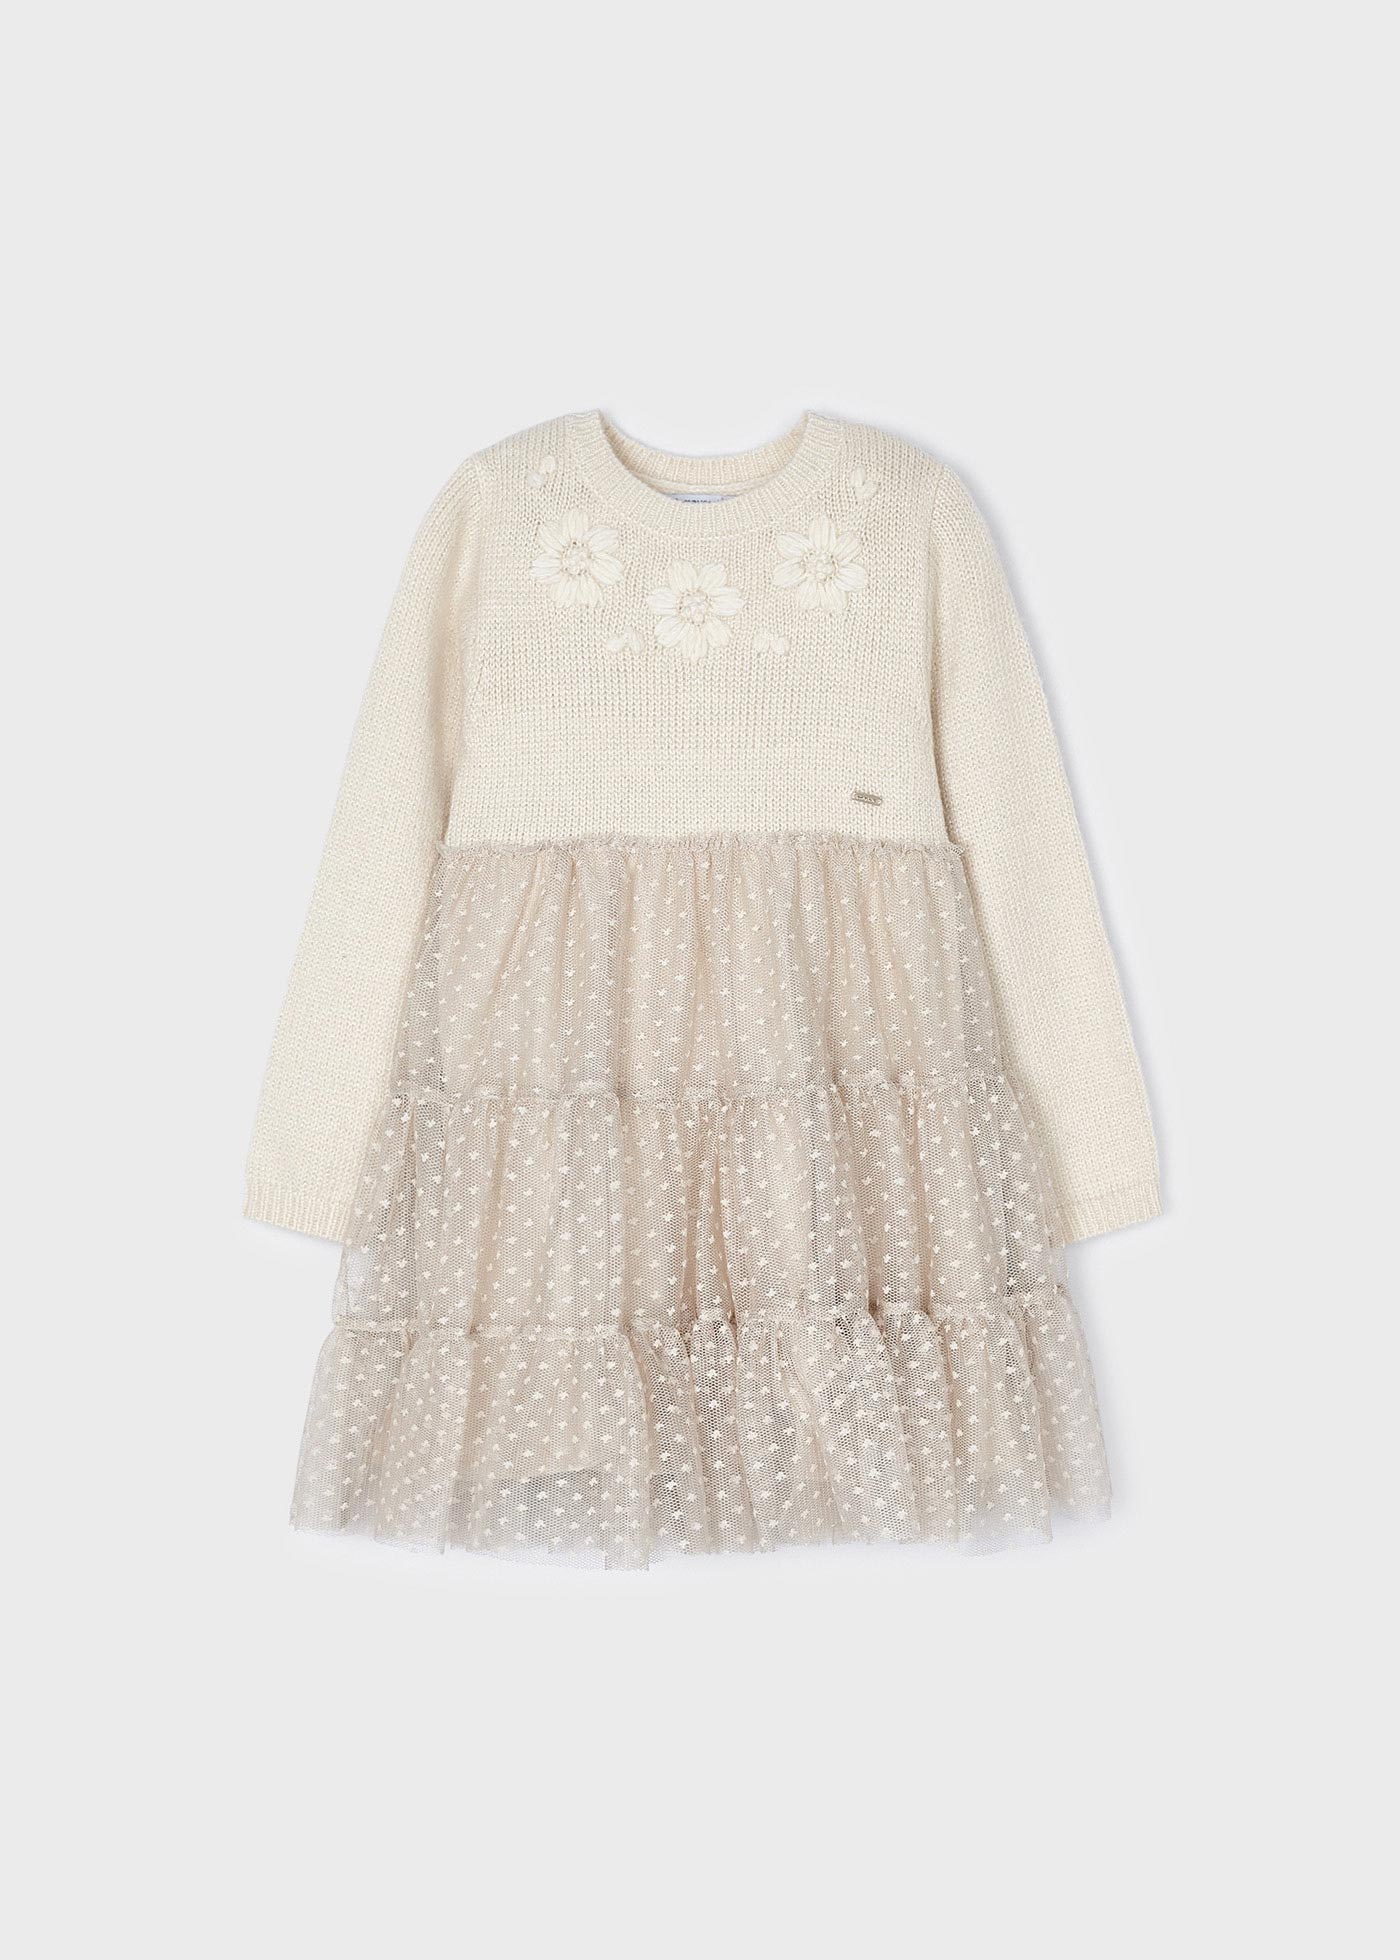 Tulle knit dress floral applique girl | Mayoral ®